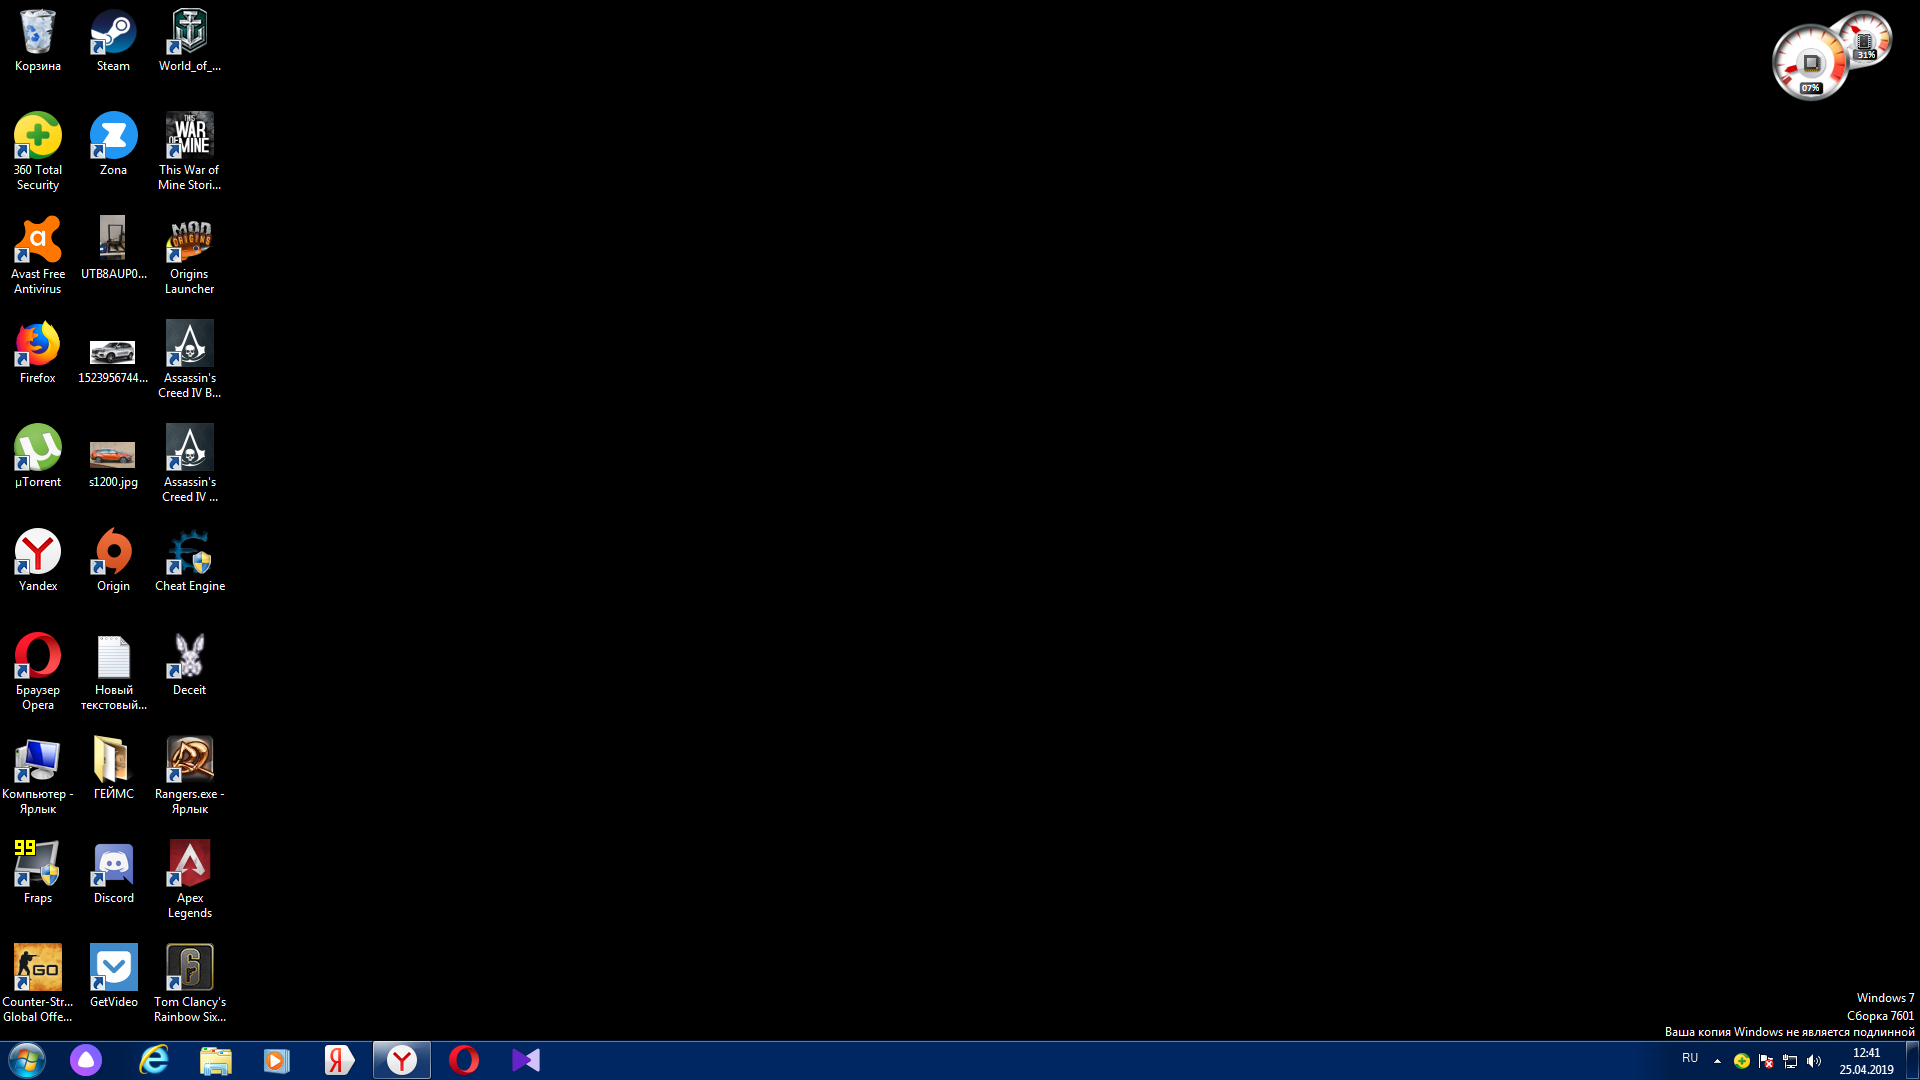 Материнская черный экран. Windows черный экран. Чёрный экран на рабочем столе. Черный экран виндовс 7. Полки для ярлыков на рабочем столе.